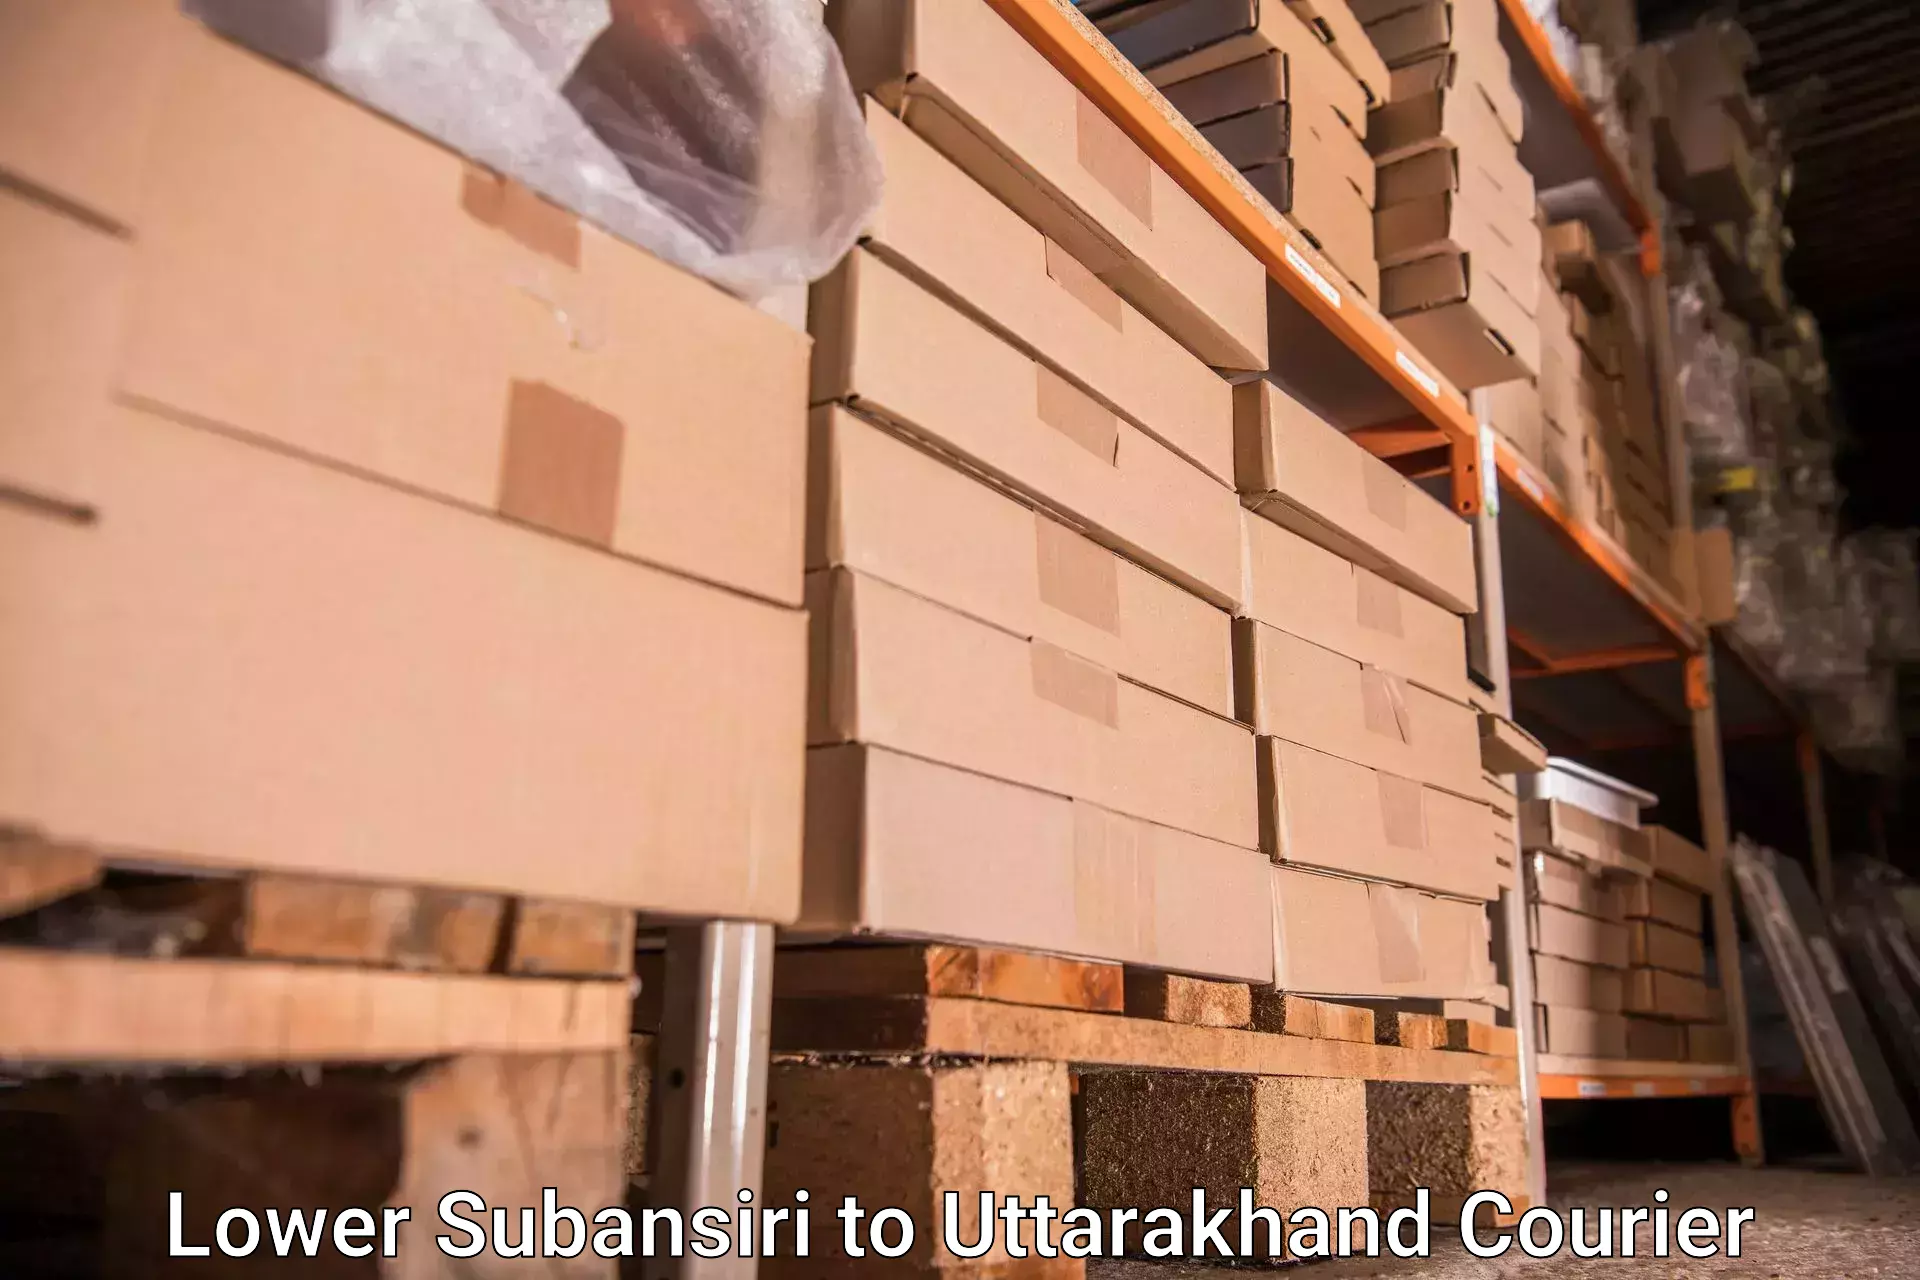 Luggage shipment specialists Lower Subansiri to Uttarakhand